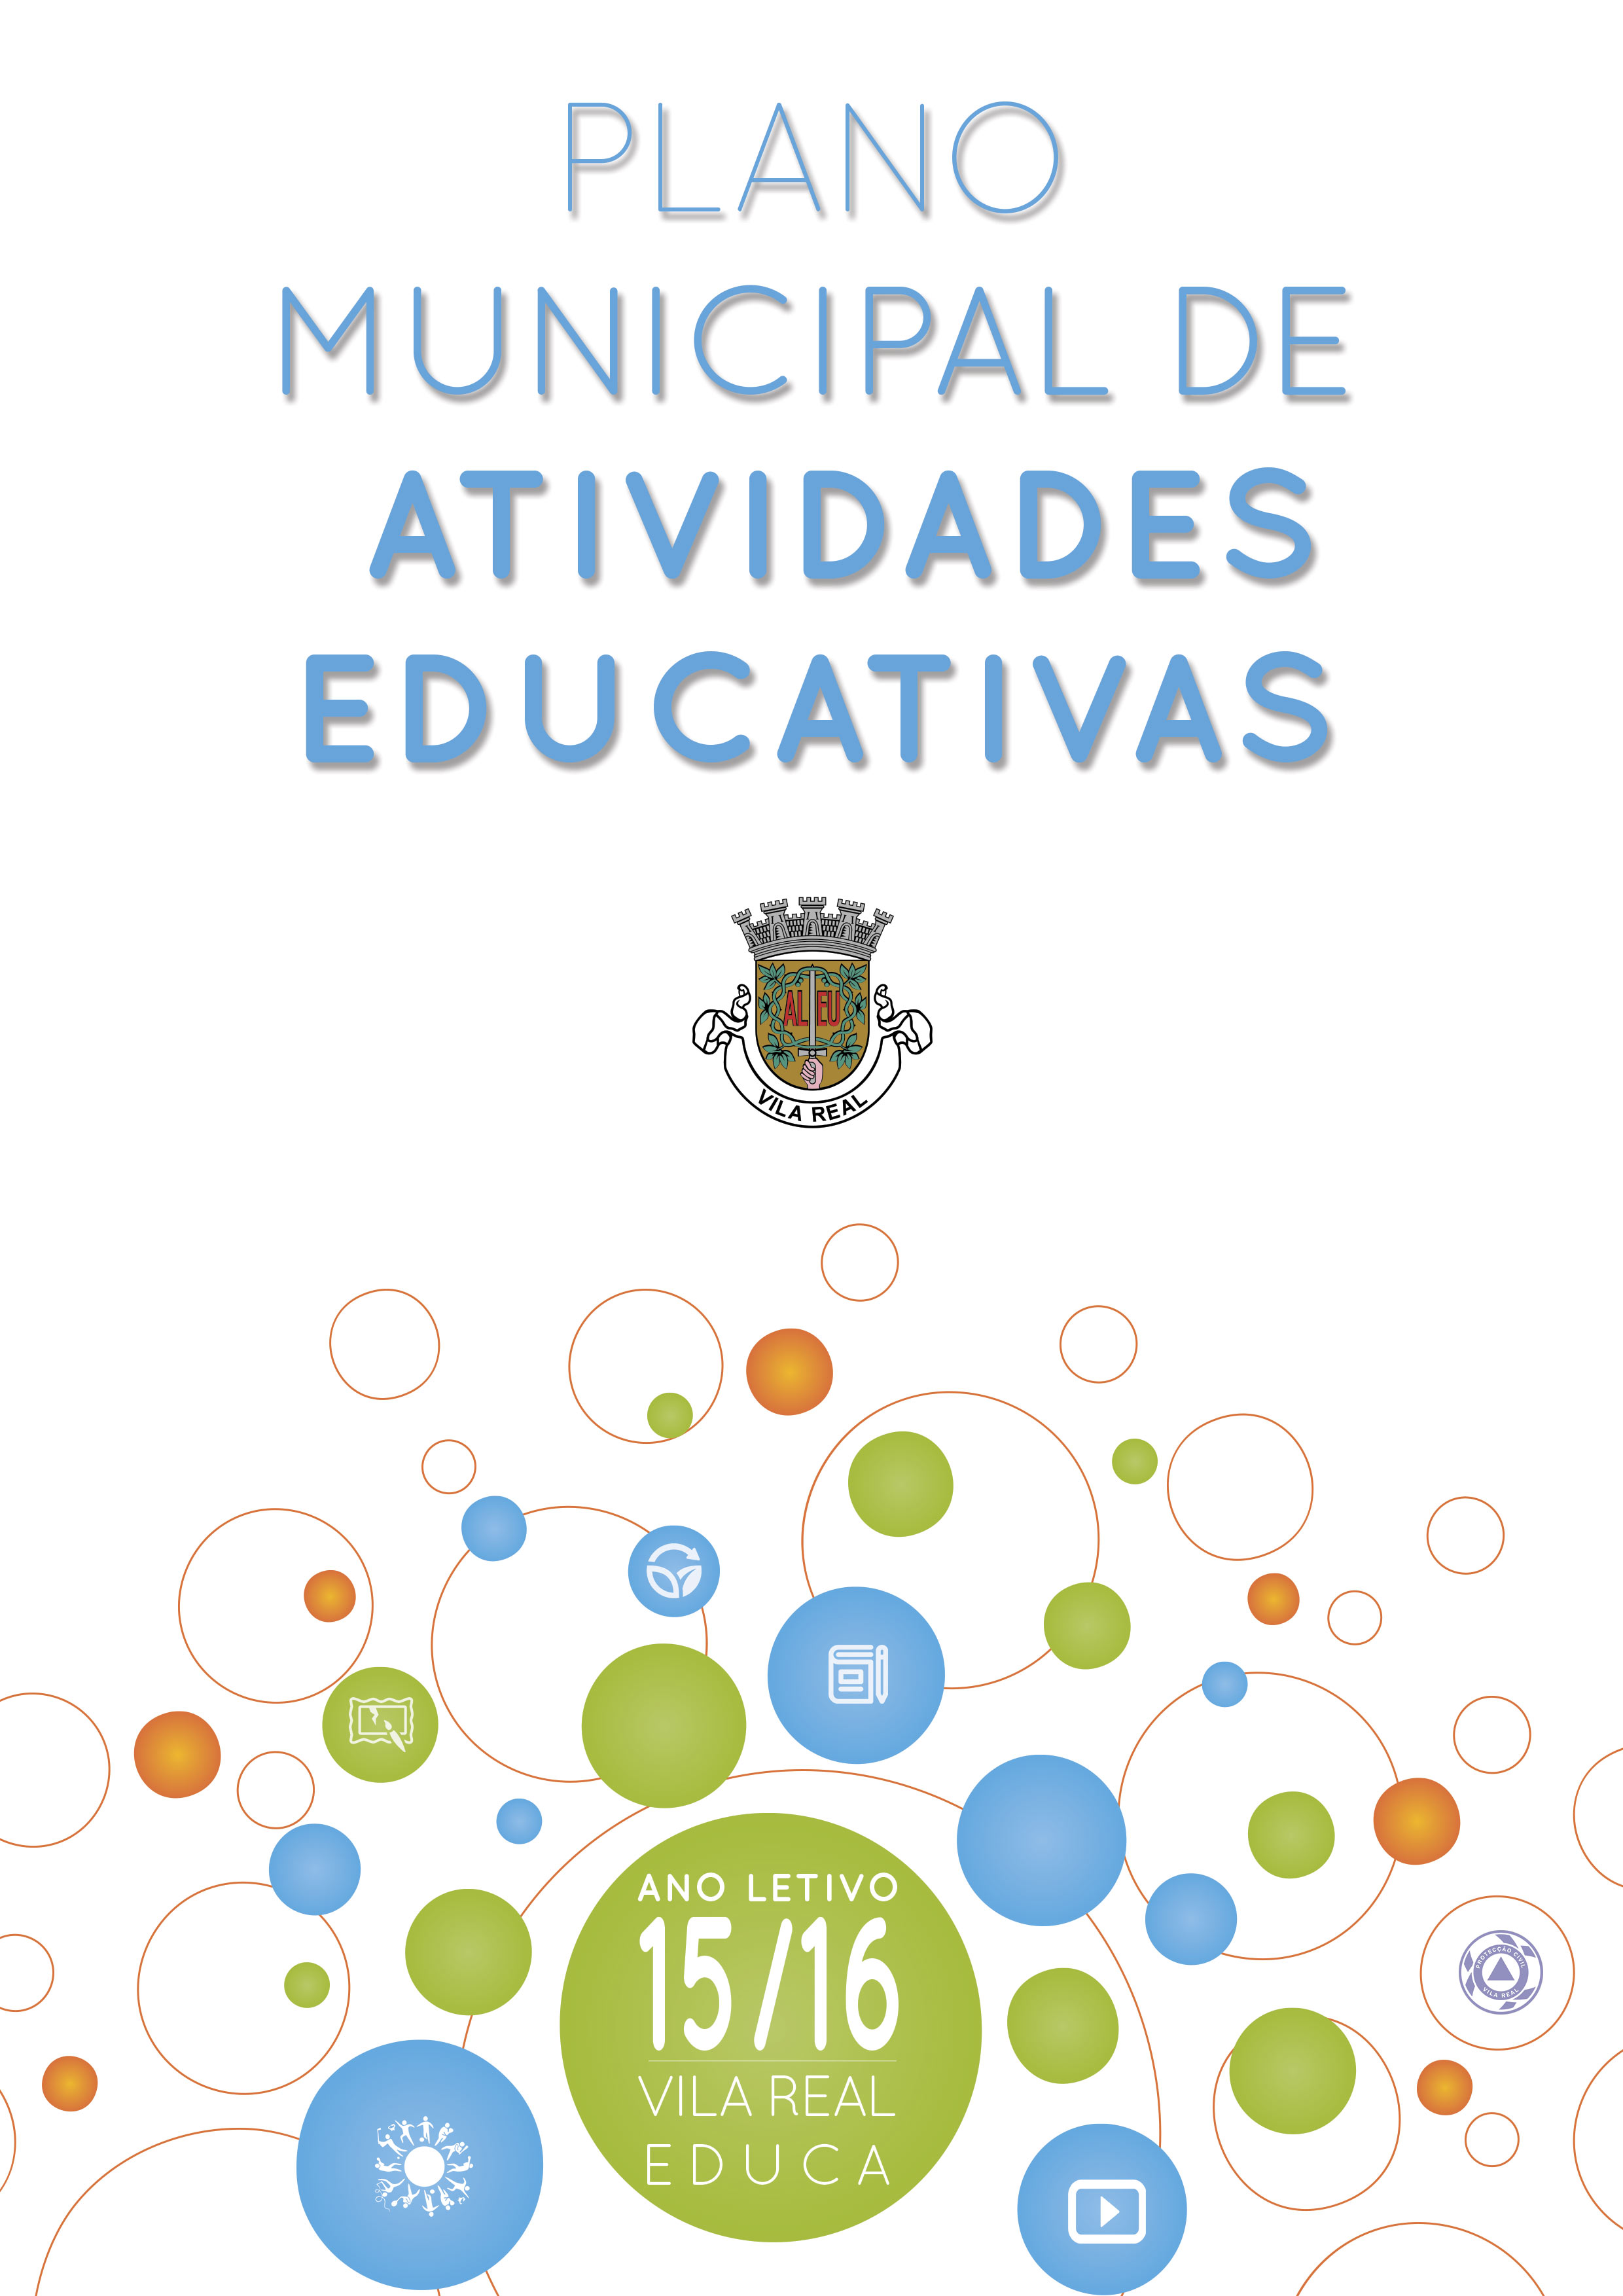 PLANO MUNICIPAL DE ATIVIDADES EDUCATIVAS PARA O ANO LETIVO 2015/16